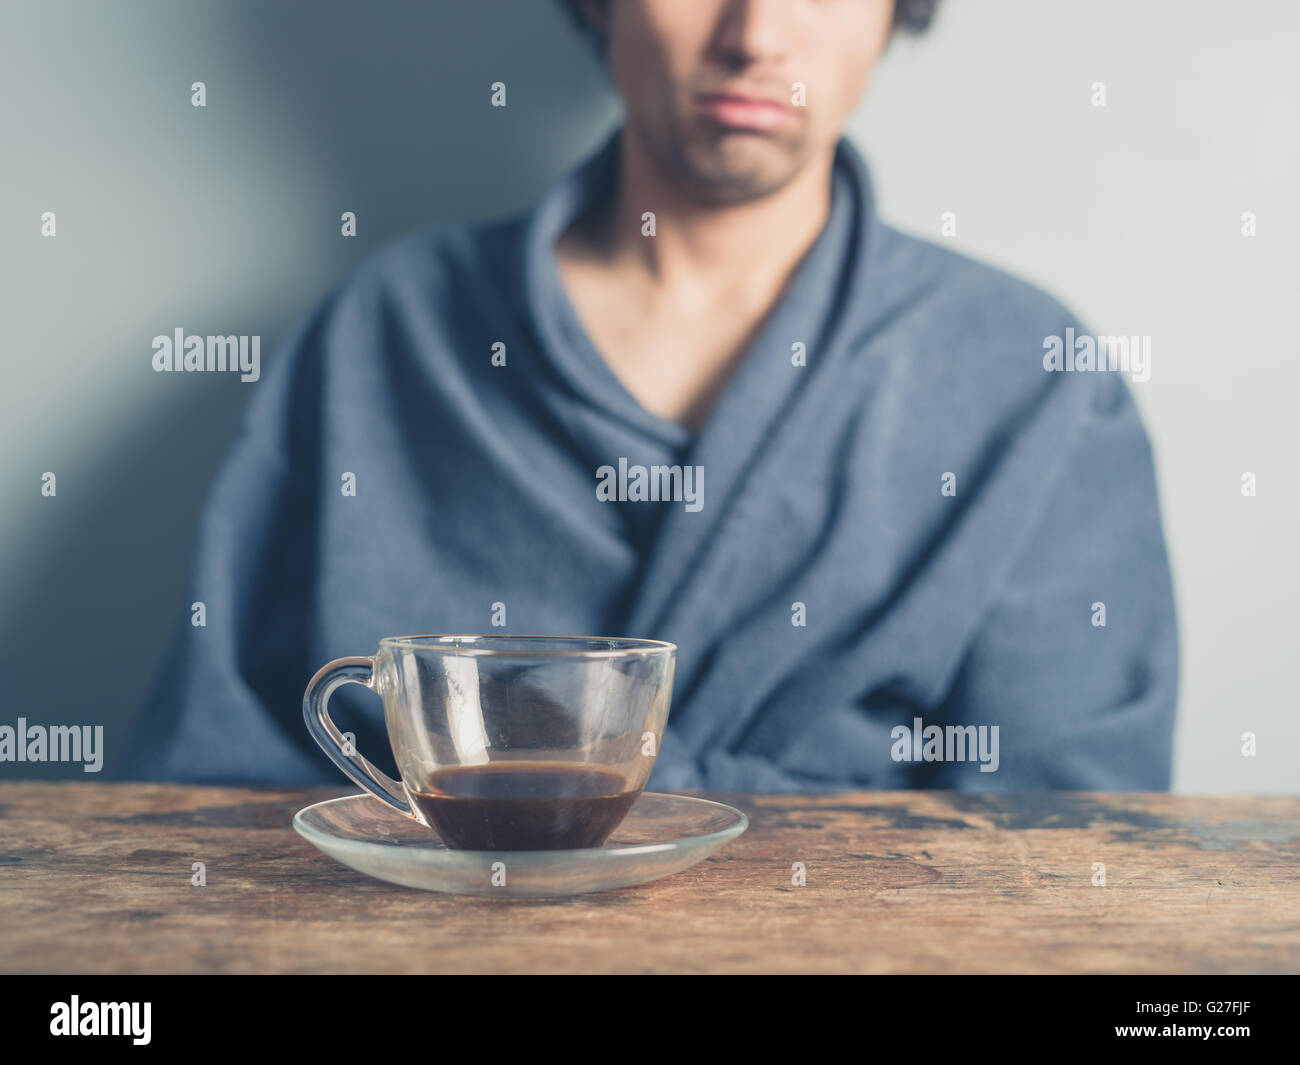 Un jeune homme fatigué portant un peignoir est assis à une table et tente de se réveiller en ayant une tasse de café Banque D'Images